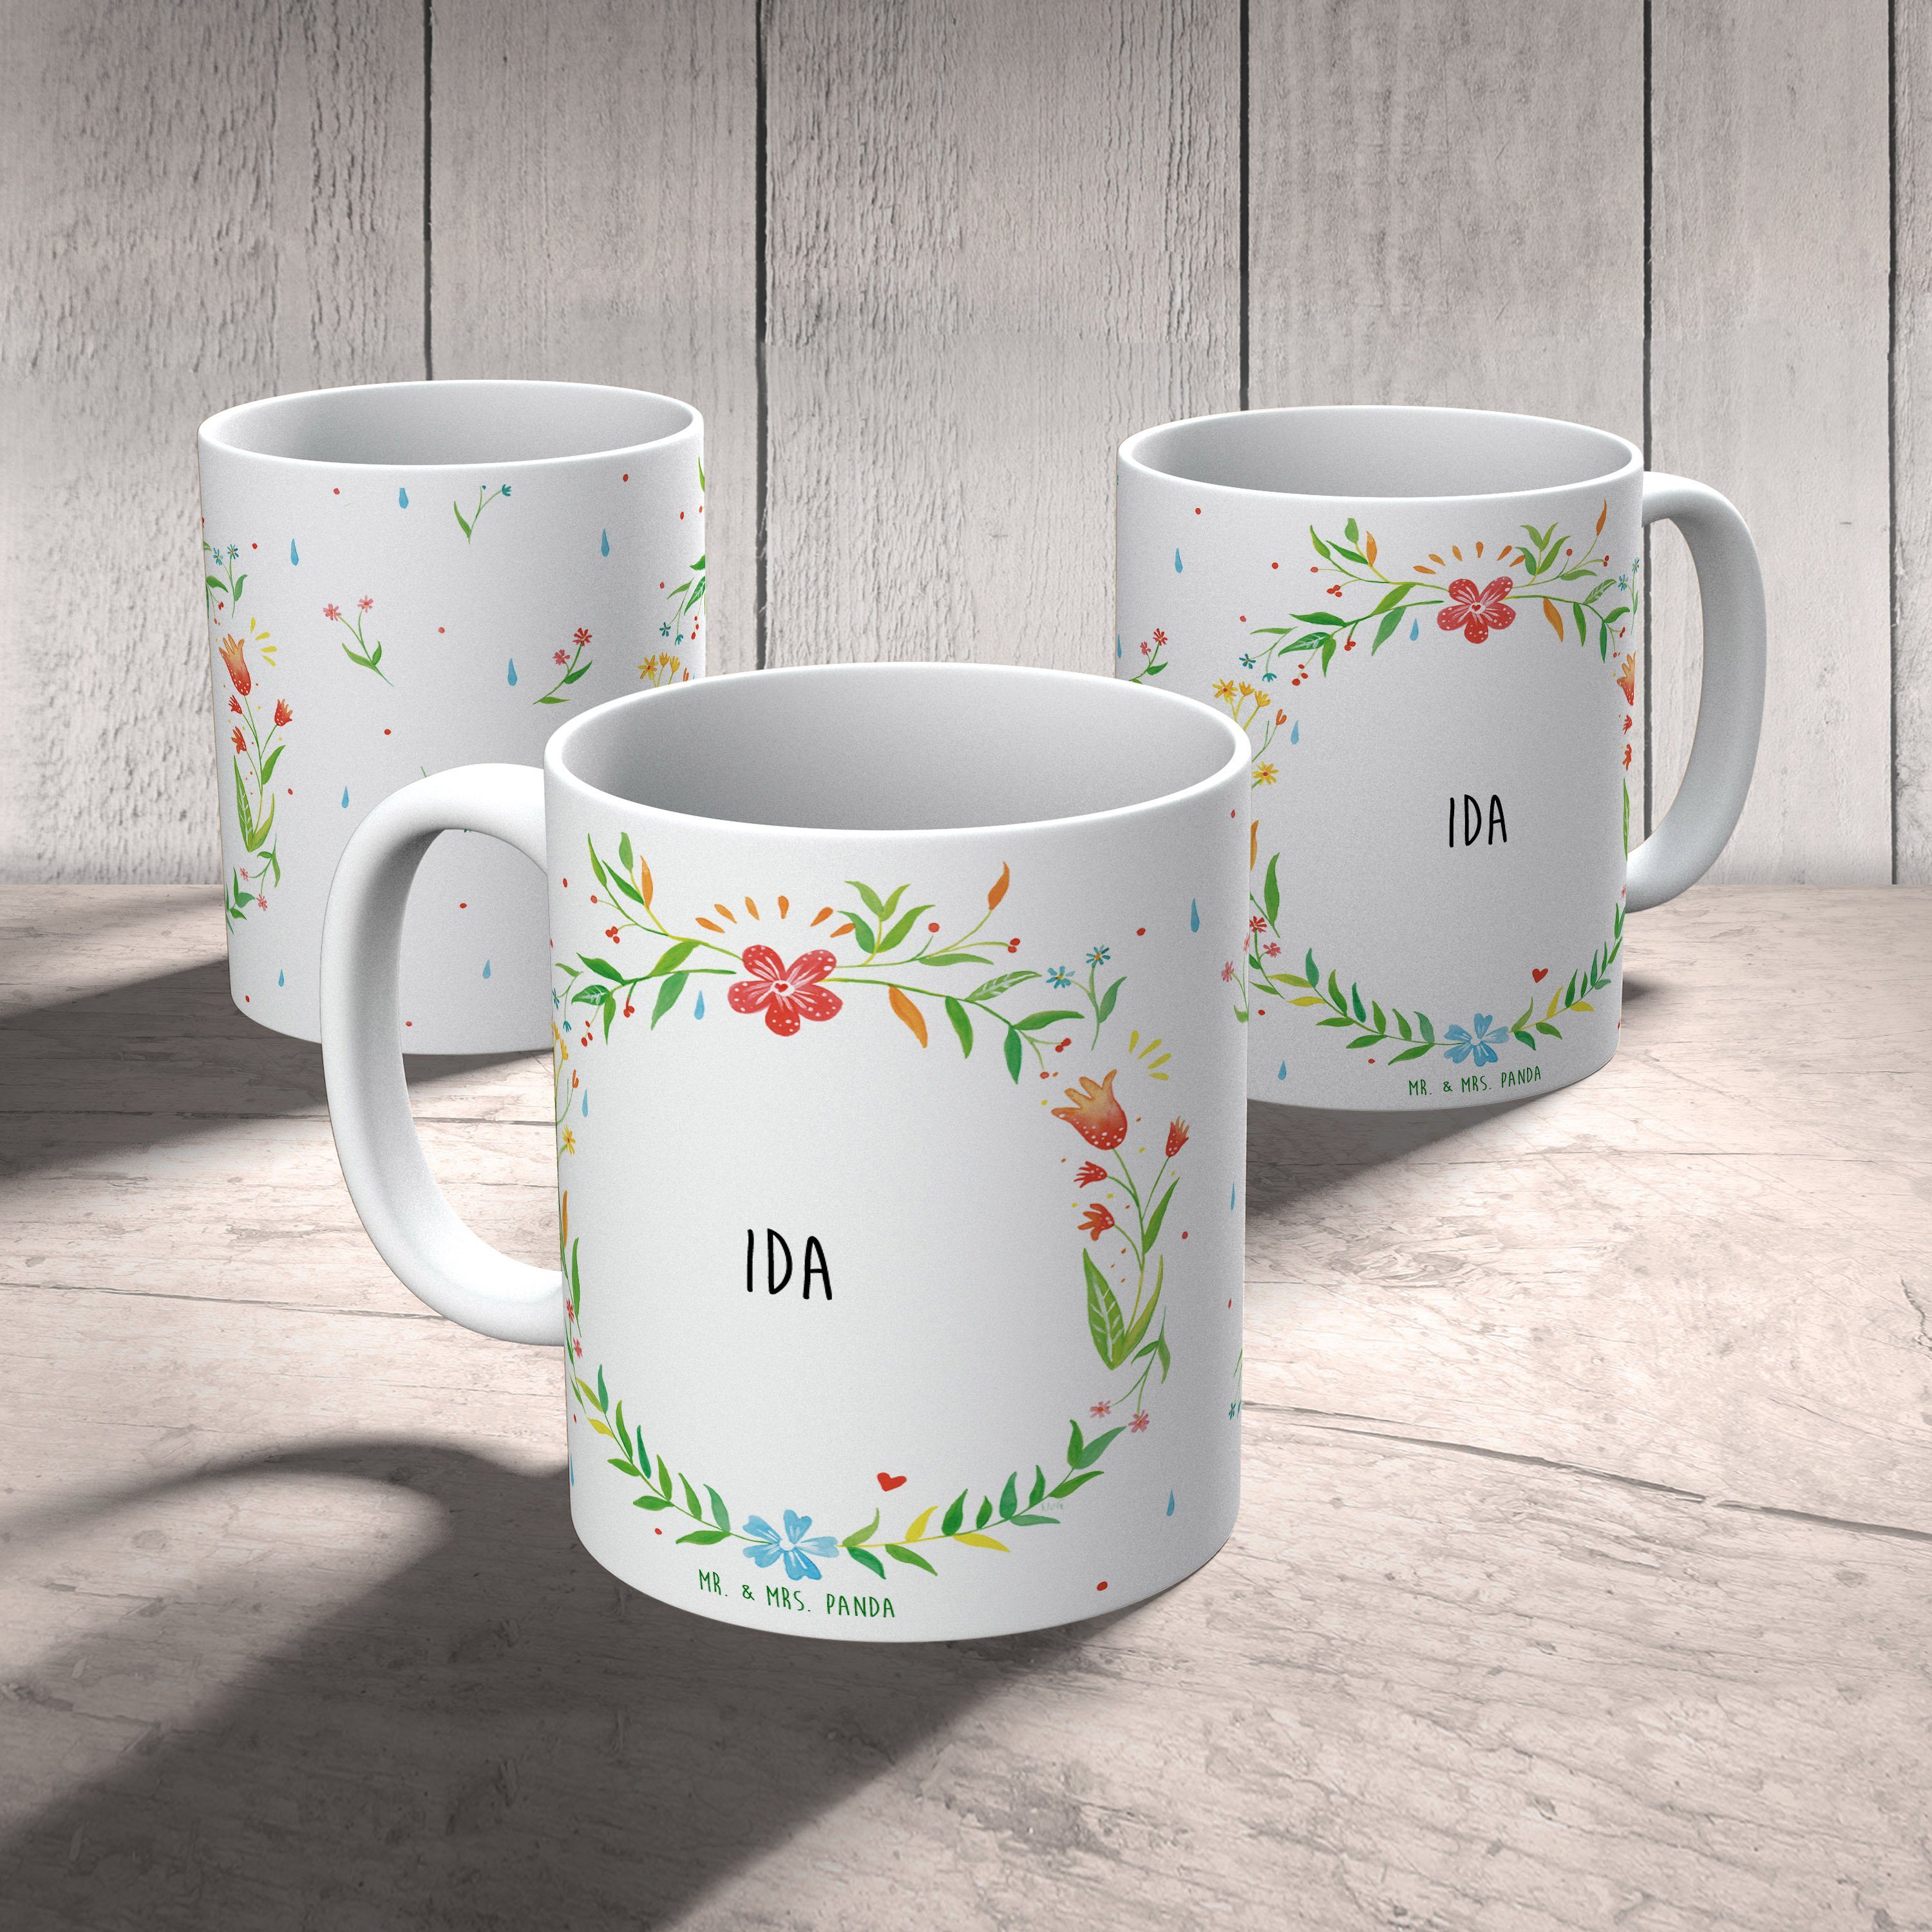 Tasse Tasse Keramik Tasse, & Tasse, Kaffeebecher, Panda - Sprüche, Ida Geschenk, Mr. Mrs. Teebecher,